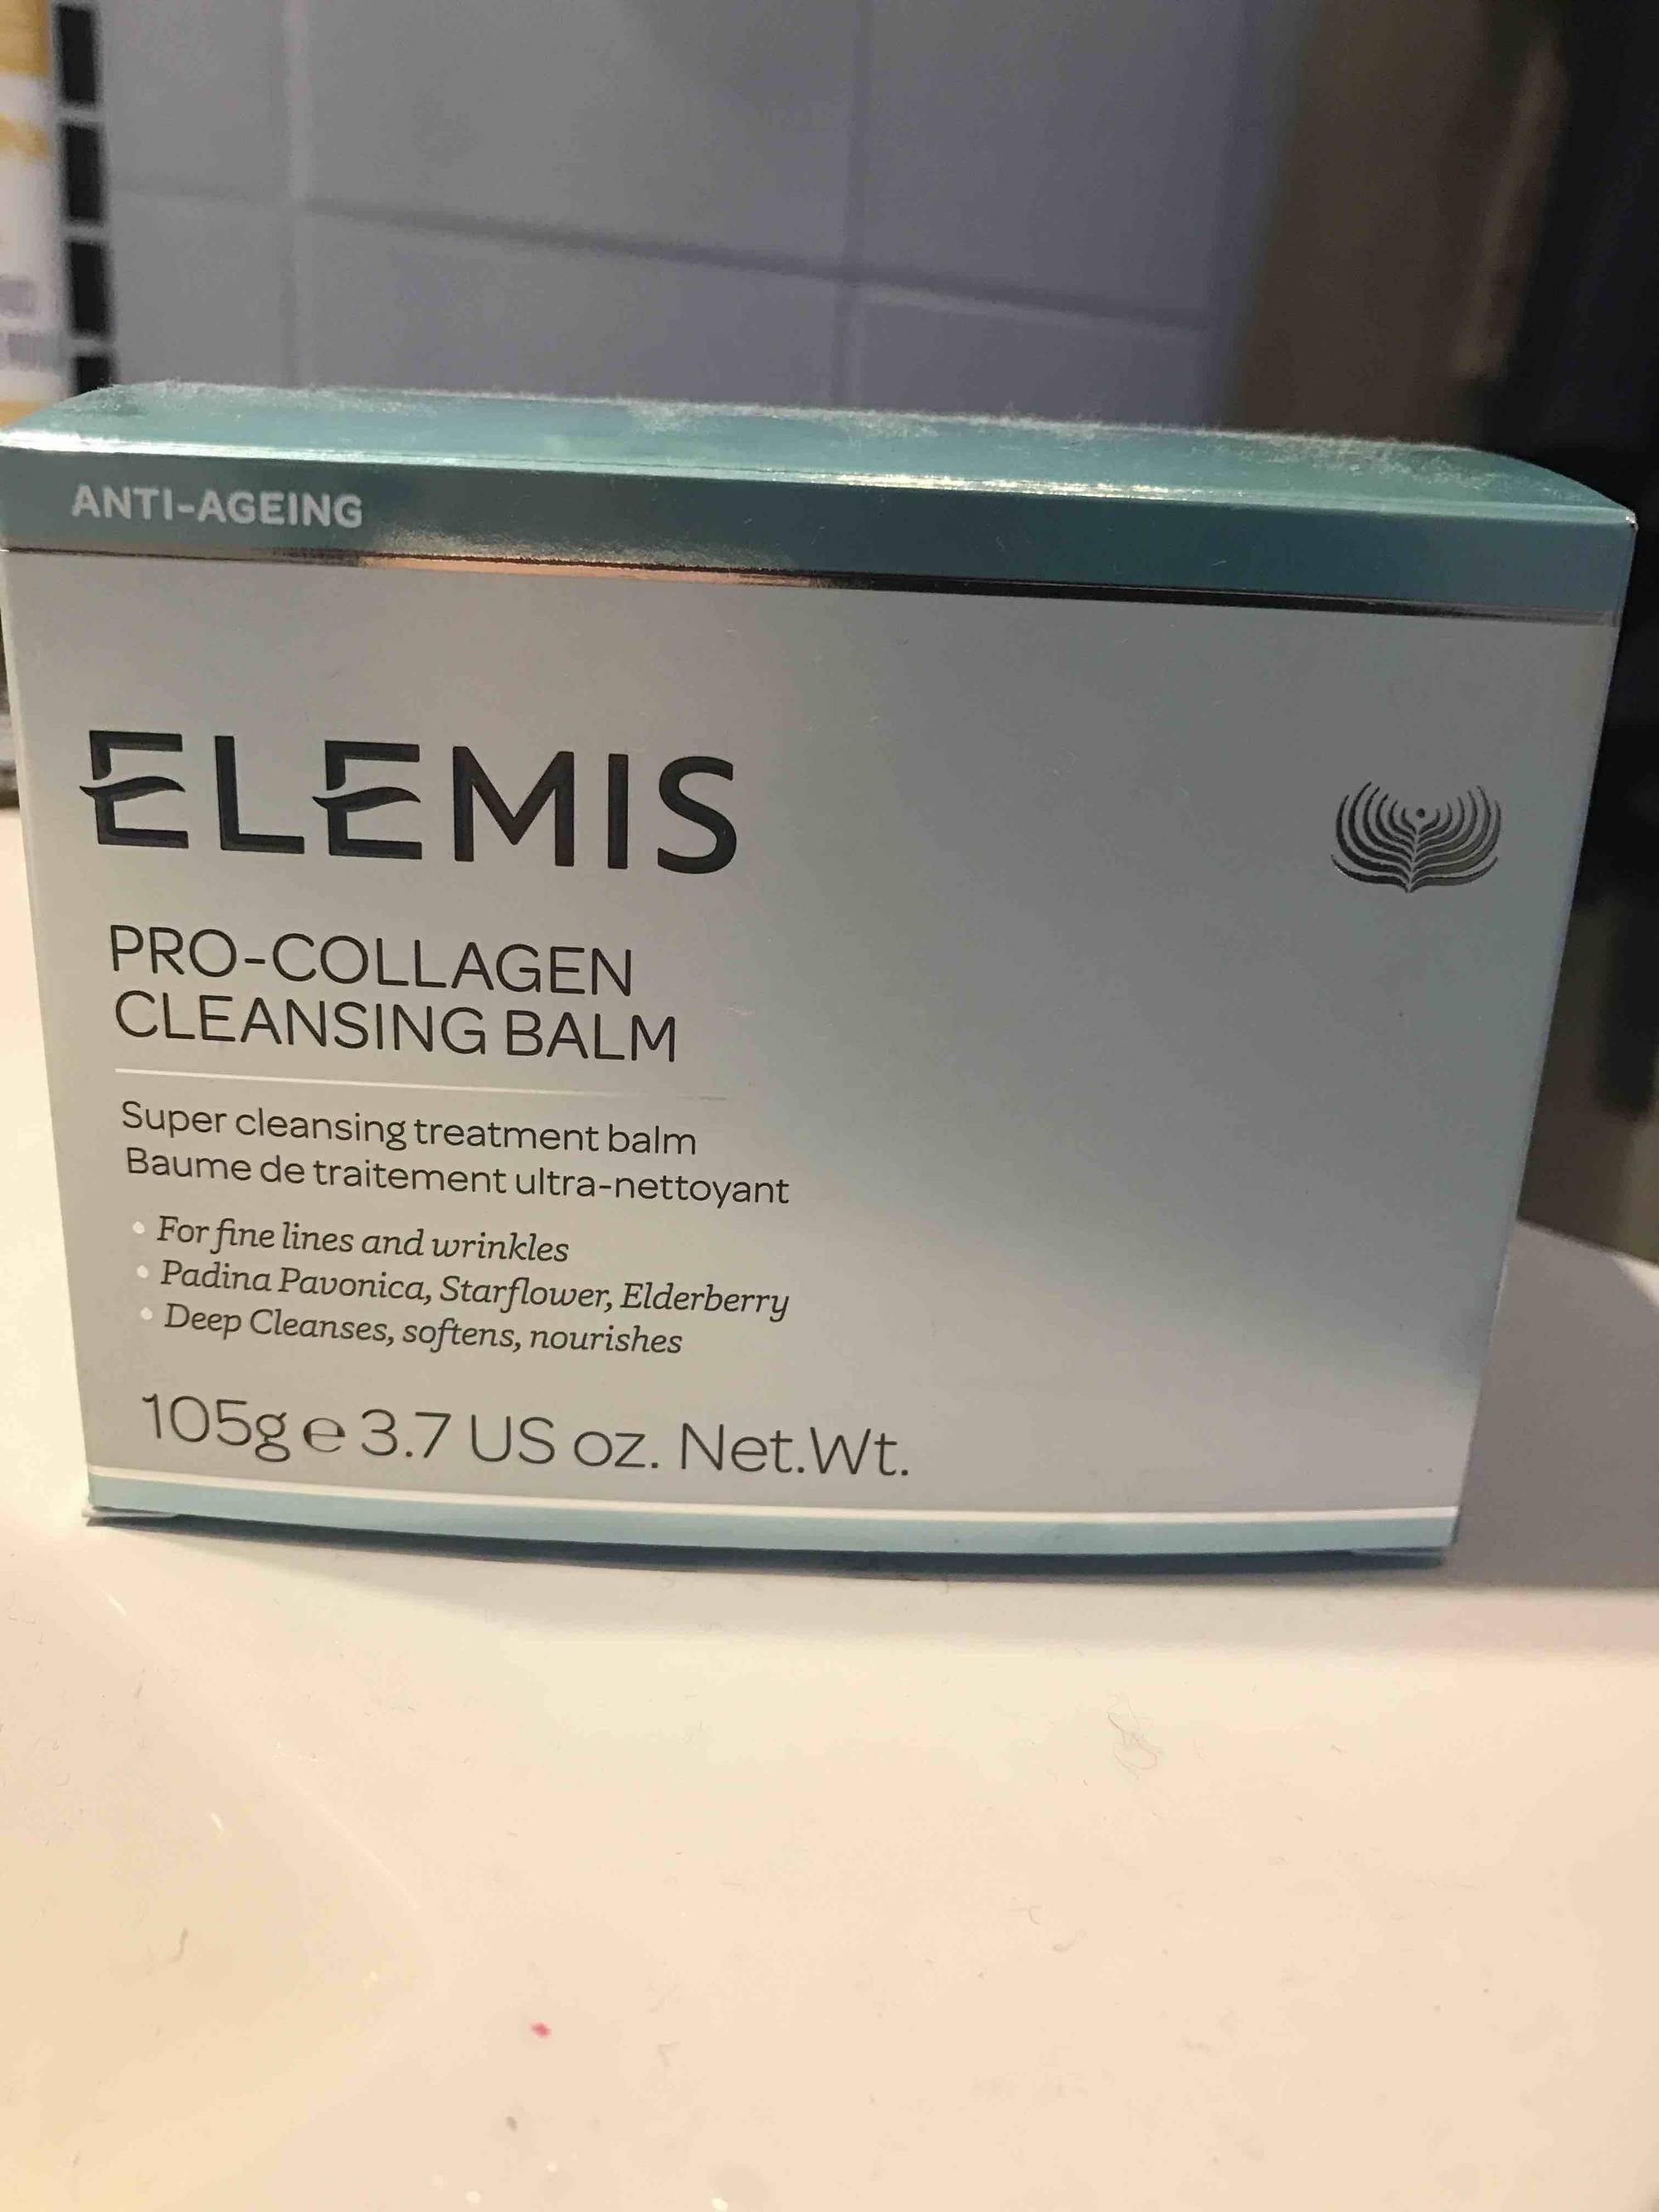 ELEMIS - Pro-collagen - Baume de traitement ultra-nettoyant